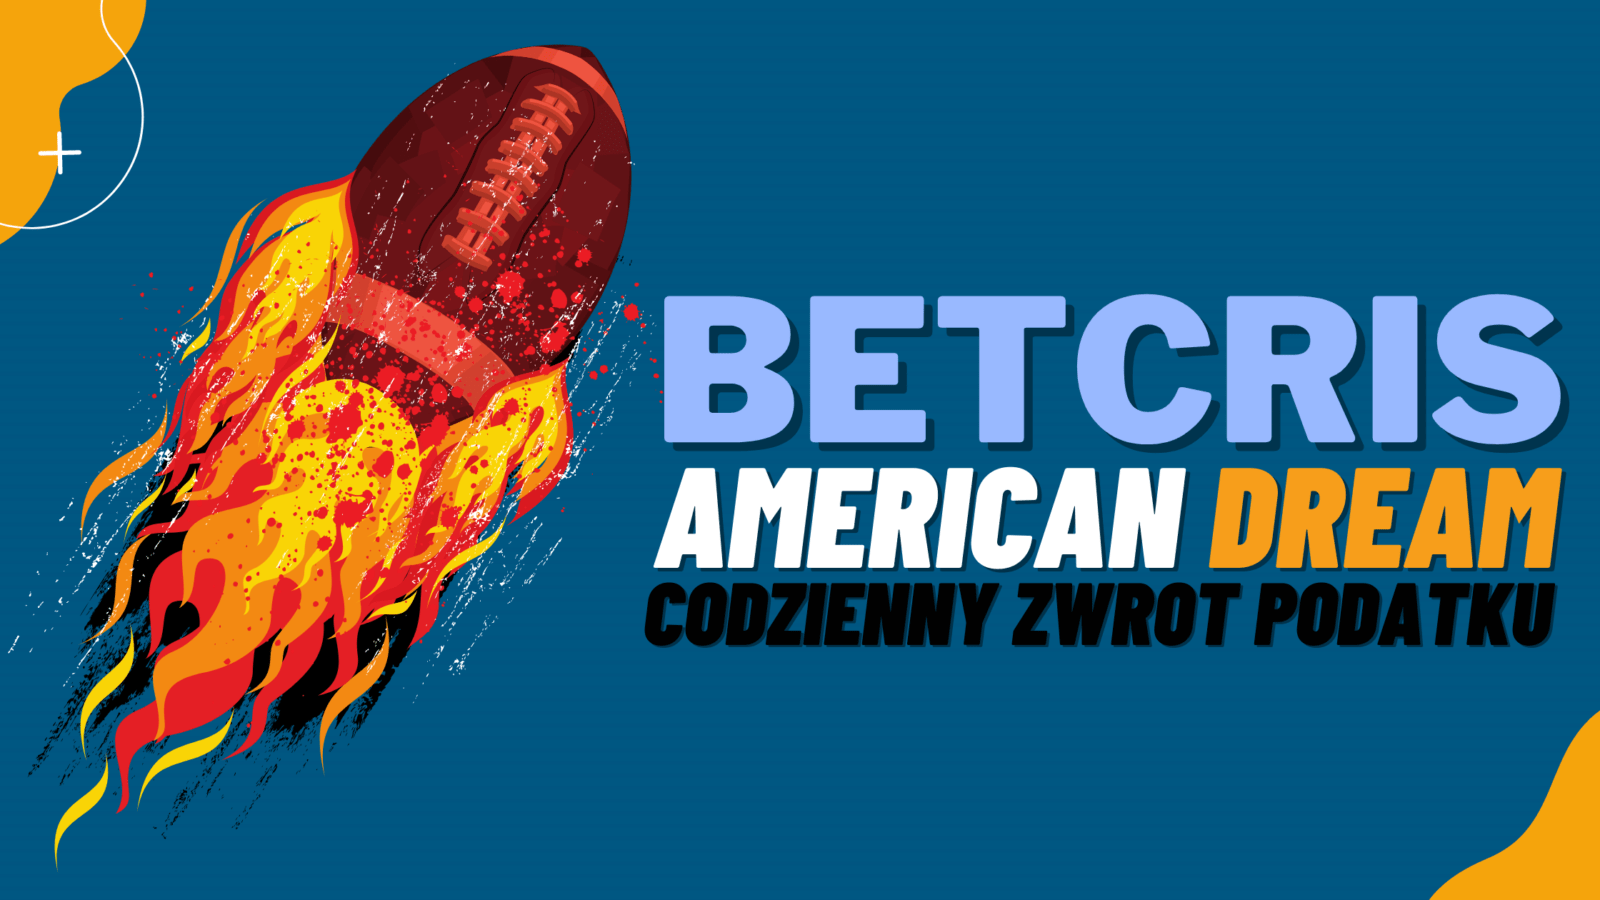 Legalny bukmacher Betcris promocja American Dream - codzienny zwrot podatku